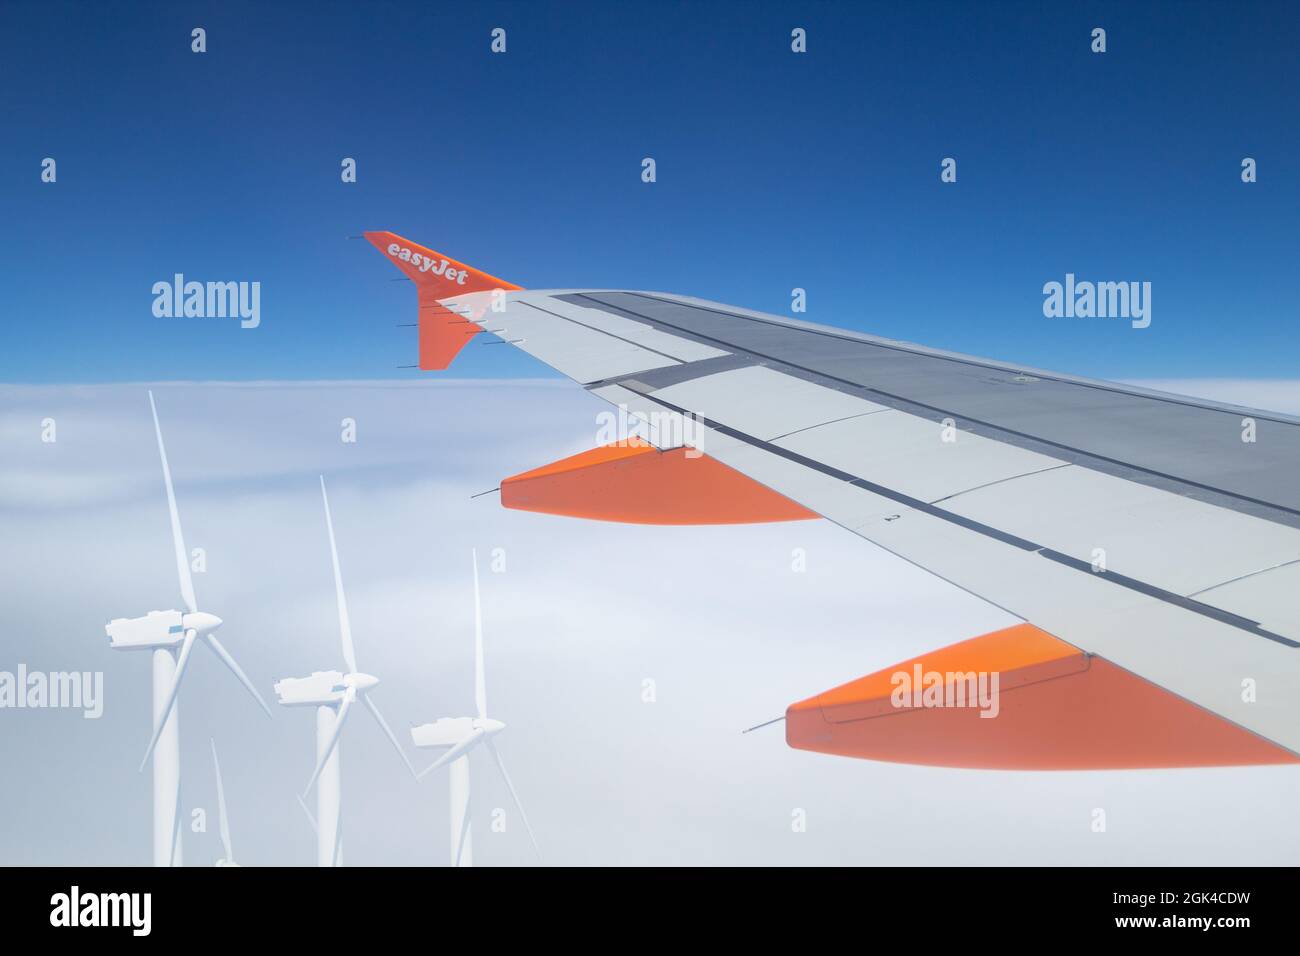 Avión easyJet volando por encima de los aerogeneradores. Industria de la aviación limpia, g.. Concepto Foto de stock